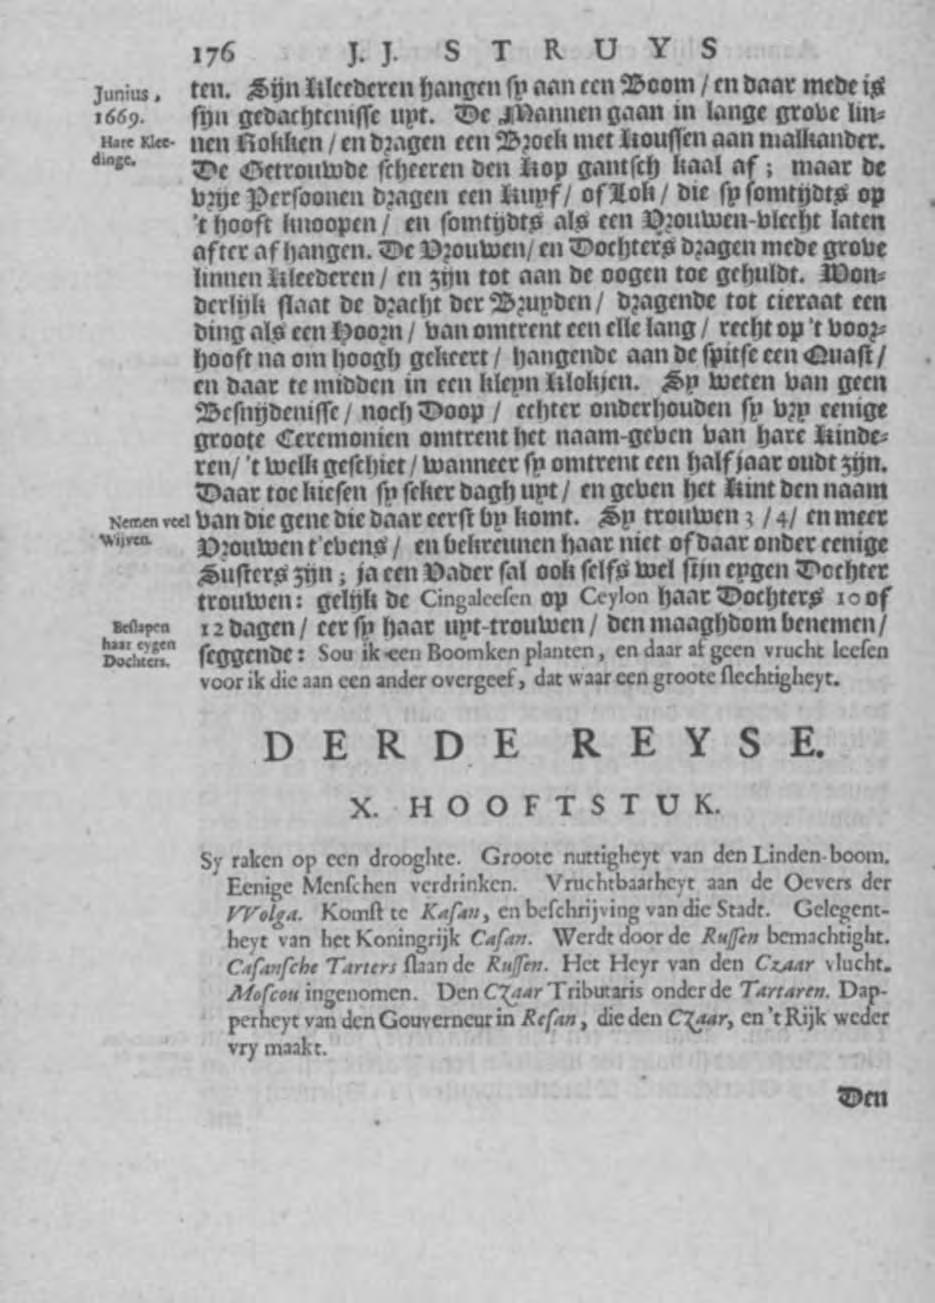 `Met een beschaafder Penne...' 45 Junius. 1669. Hare law din% 176 j. t5, T I,.. ^,, ^ fiftcrae let hum Isieebtïptt/in btrip *at #iottot bing atitegtinipfi ^^ 